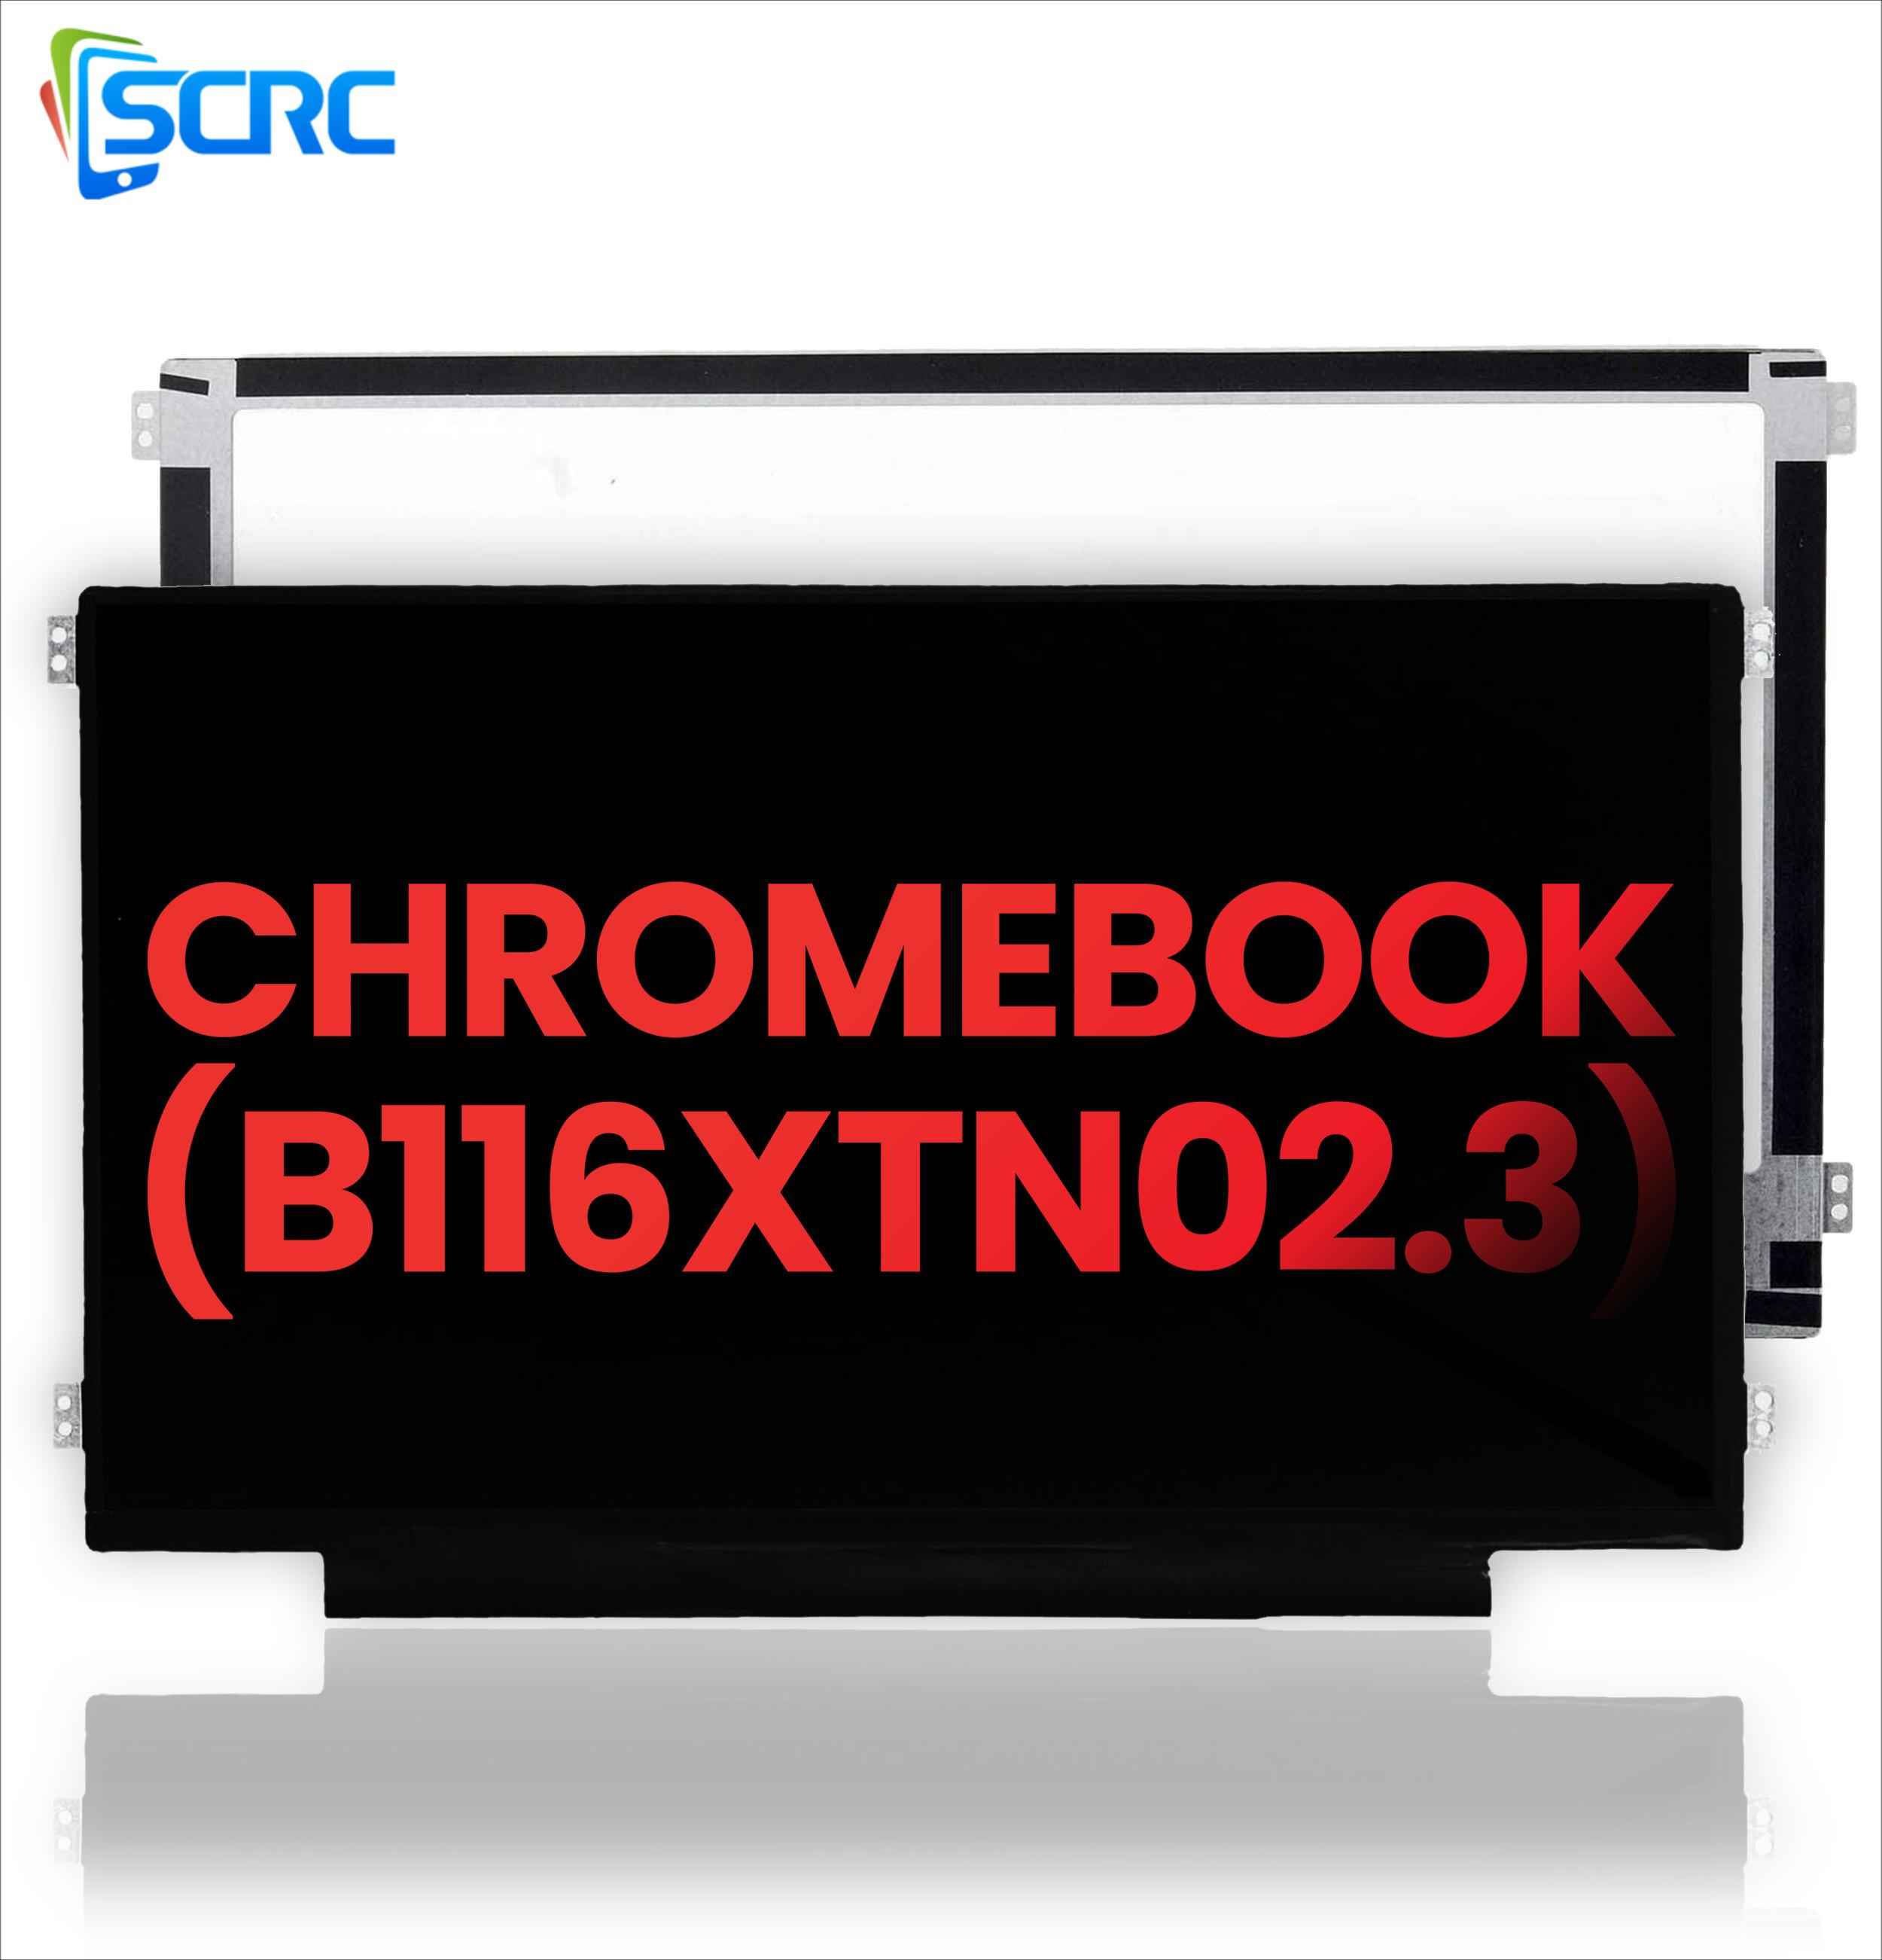 DELL Chromebook B116XTN02.3 üçün LCD Ekranın dəyişdirilməsi